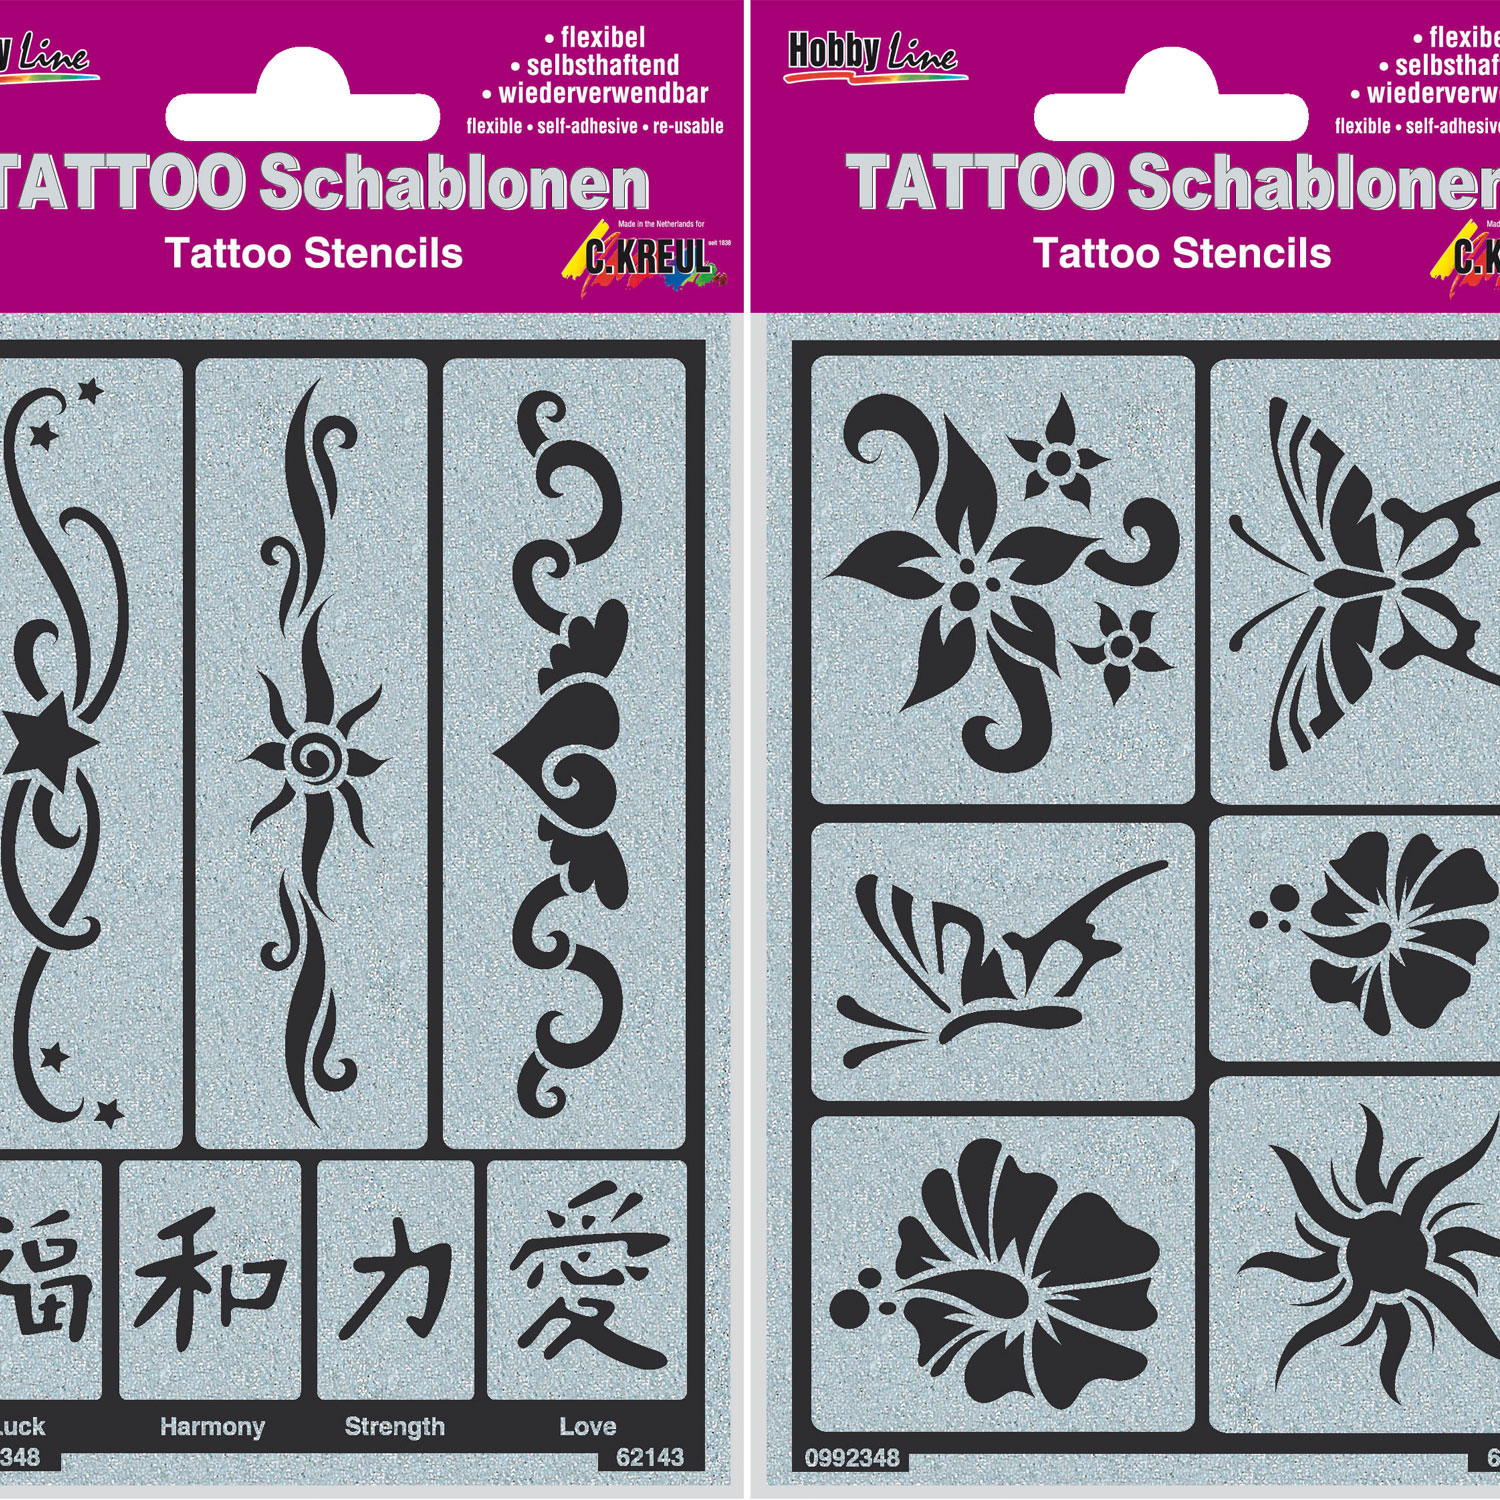 Tattoo-Schablonen Set, Produktbild 1